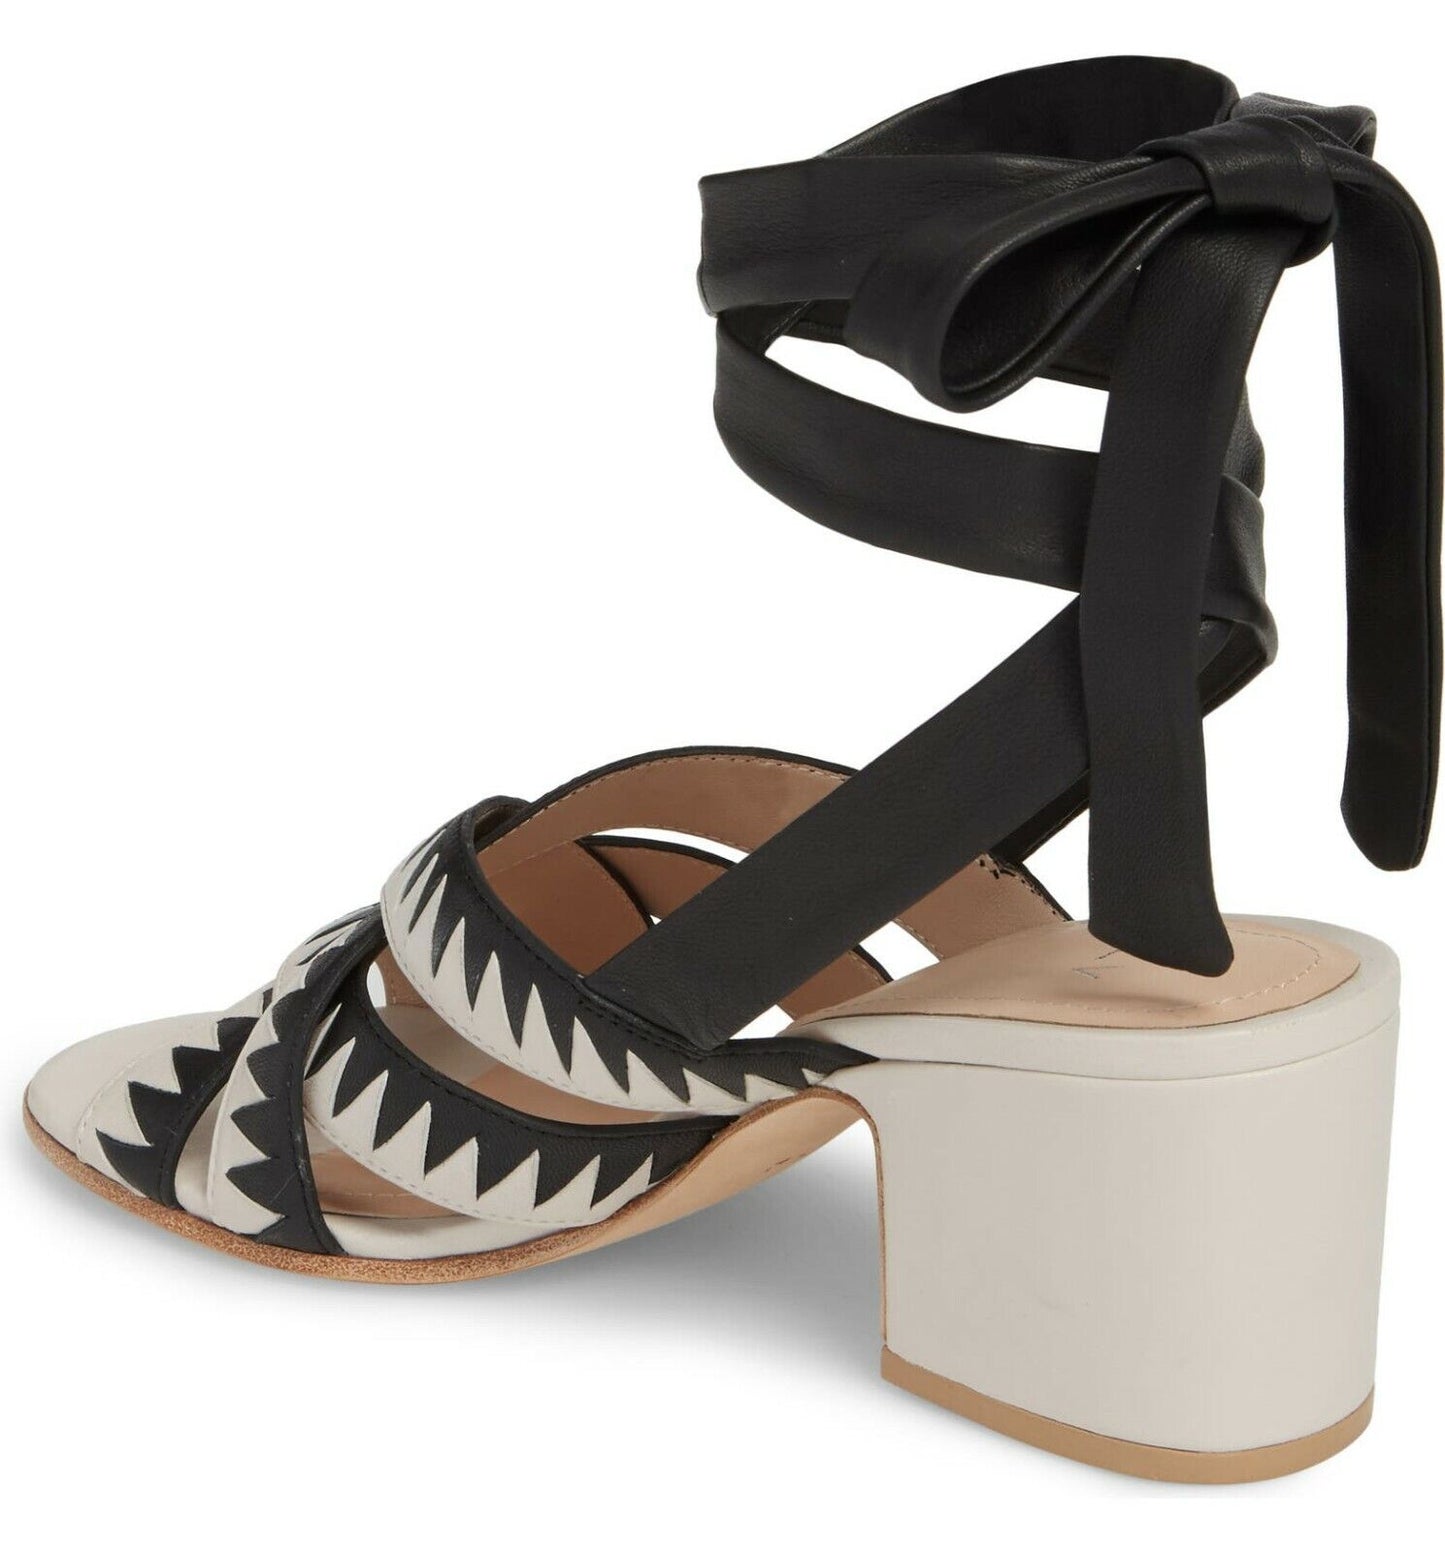 PLV Pour La Victoire Anisa Leather Ankle Wrap Heel Sandals Size 6